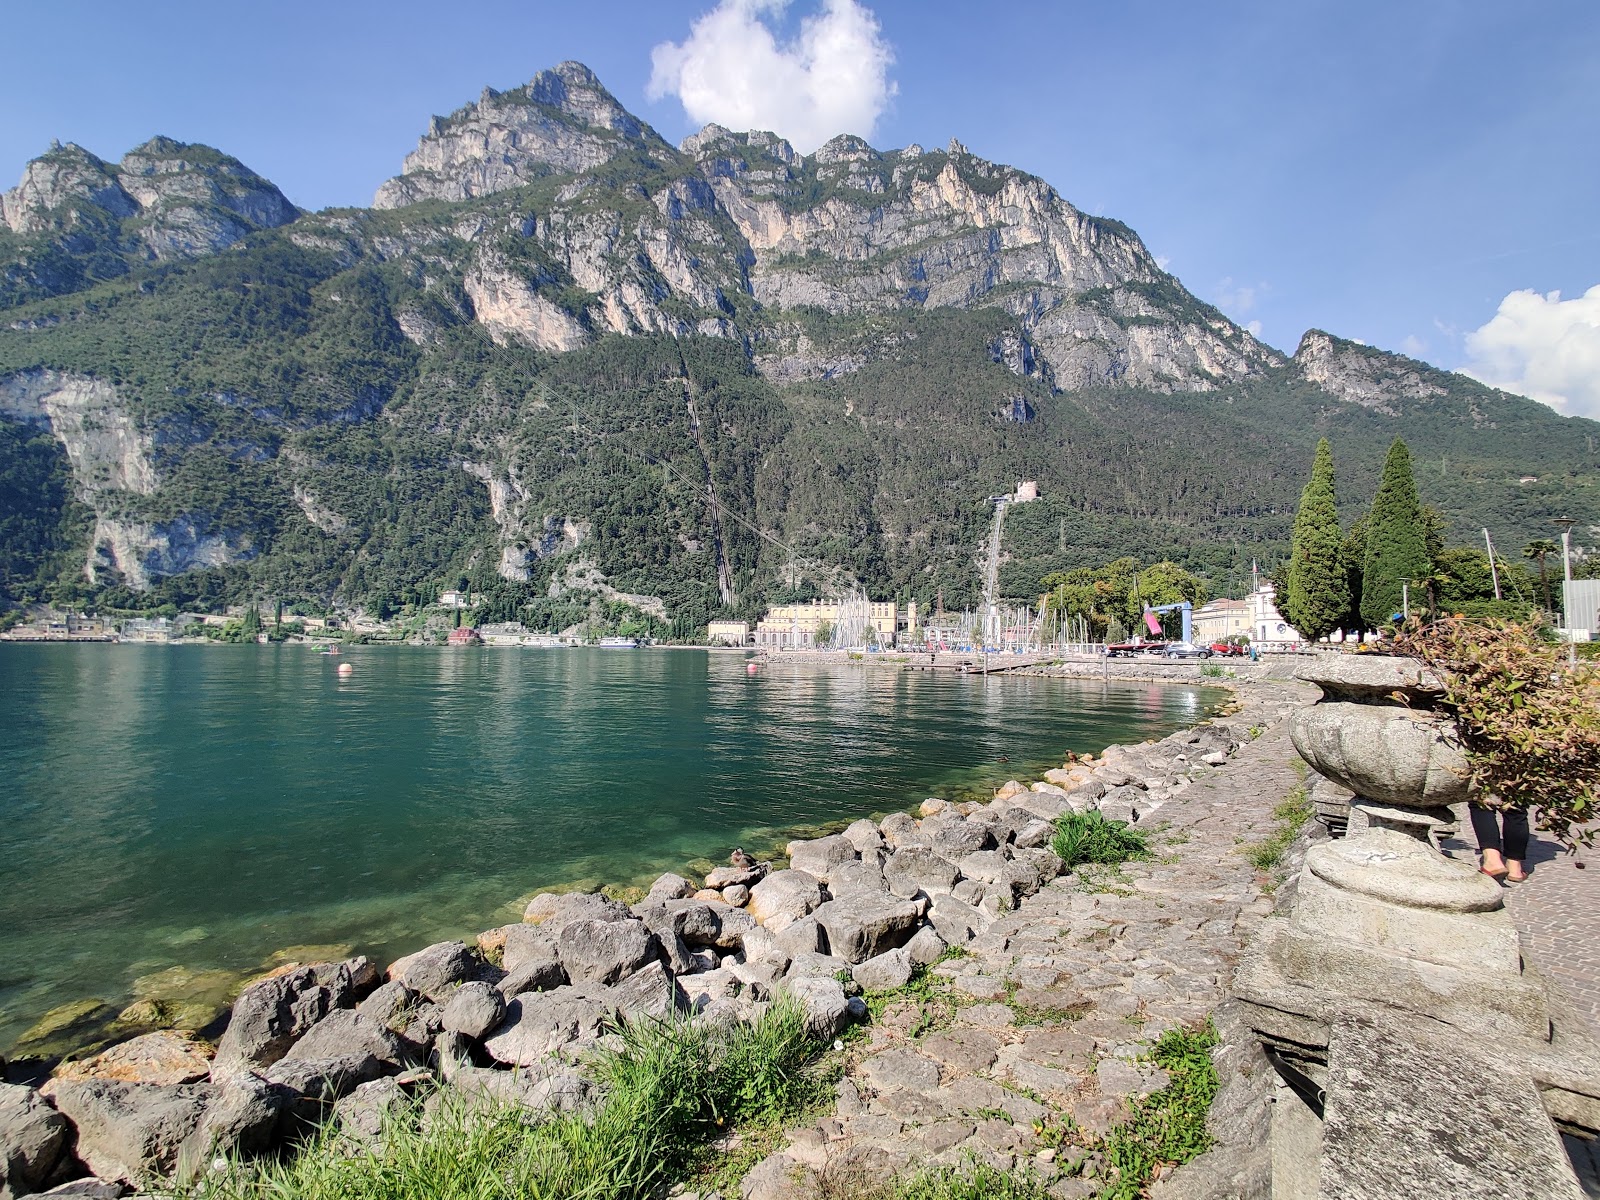 Spiaggia Riva del Garda'in fotoğrafı - rahatlamayı sevenler arasında popüler bir yer